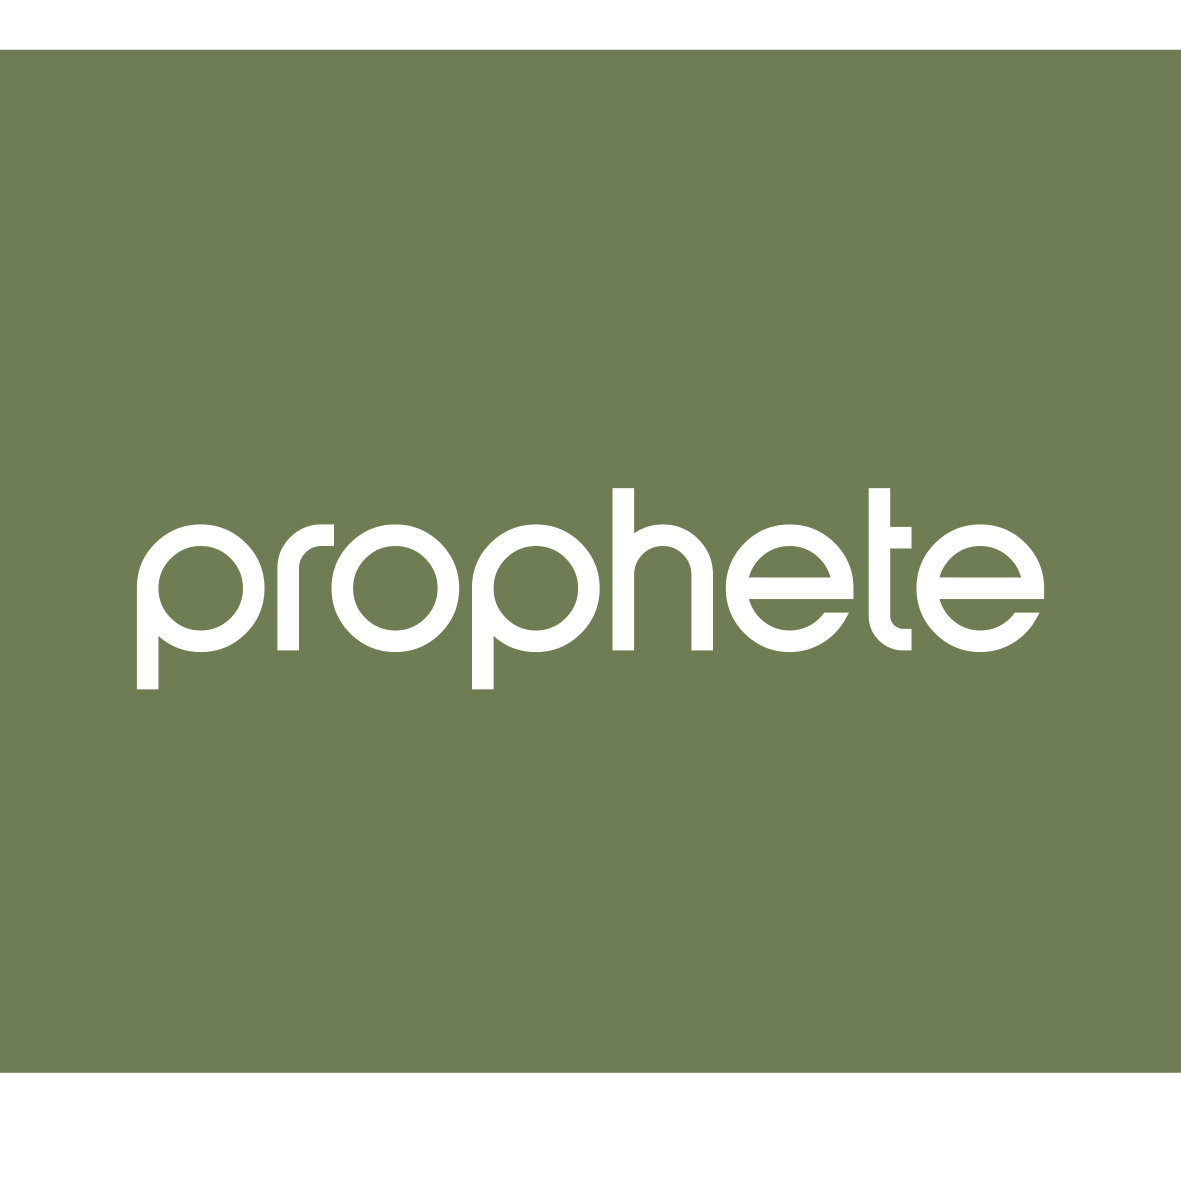 Prophete Logo